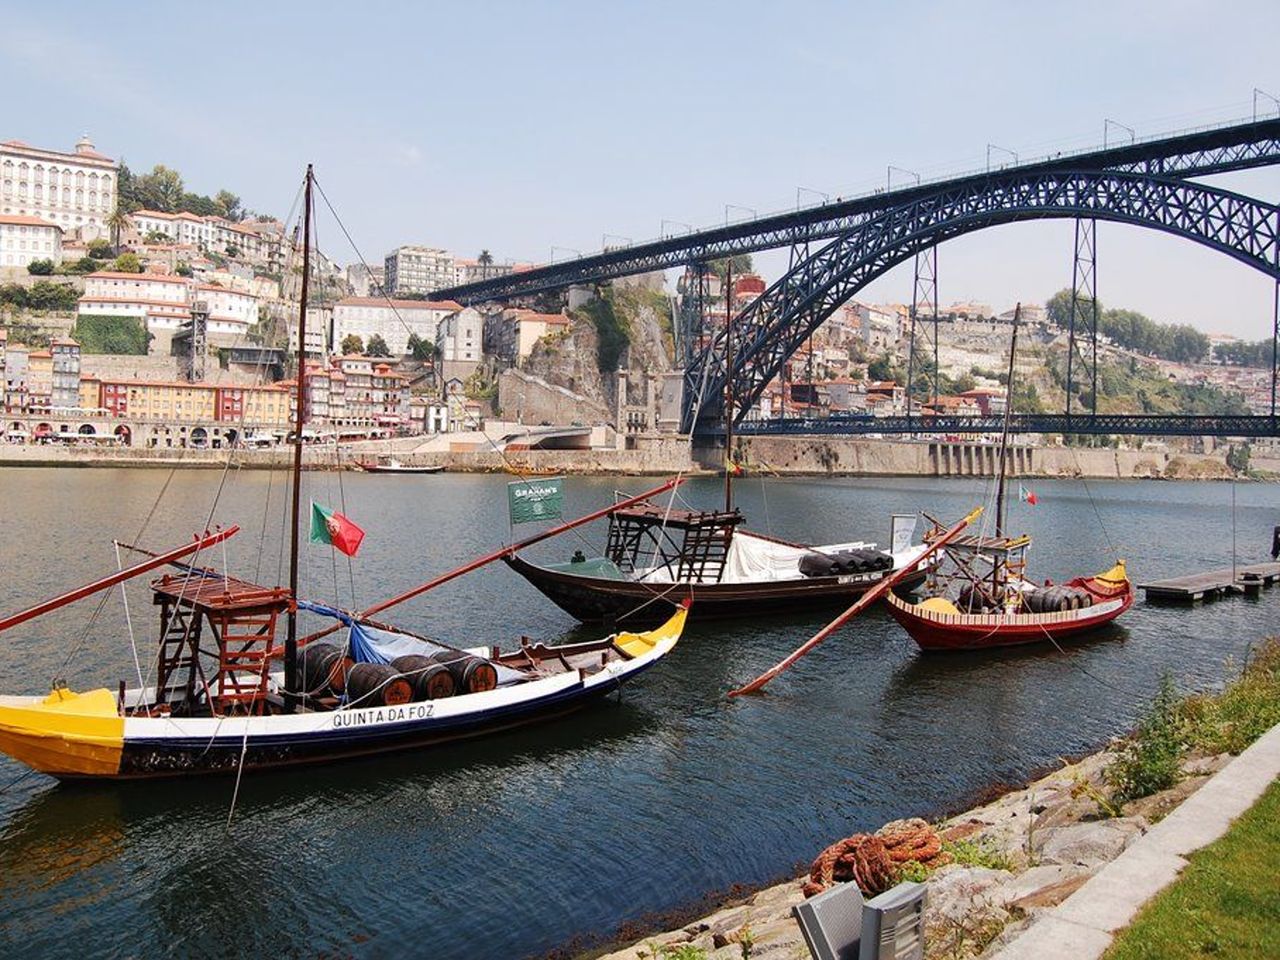 Порту — северная столица Португалии | Цена 600€, отзывы, описание экскурсии